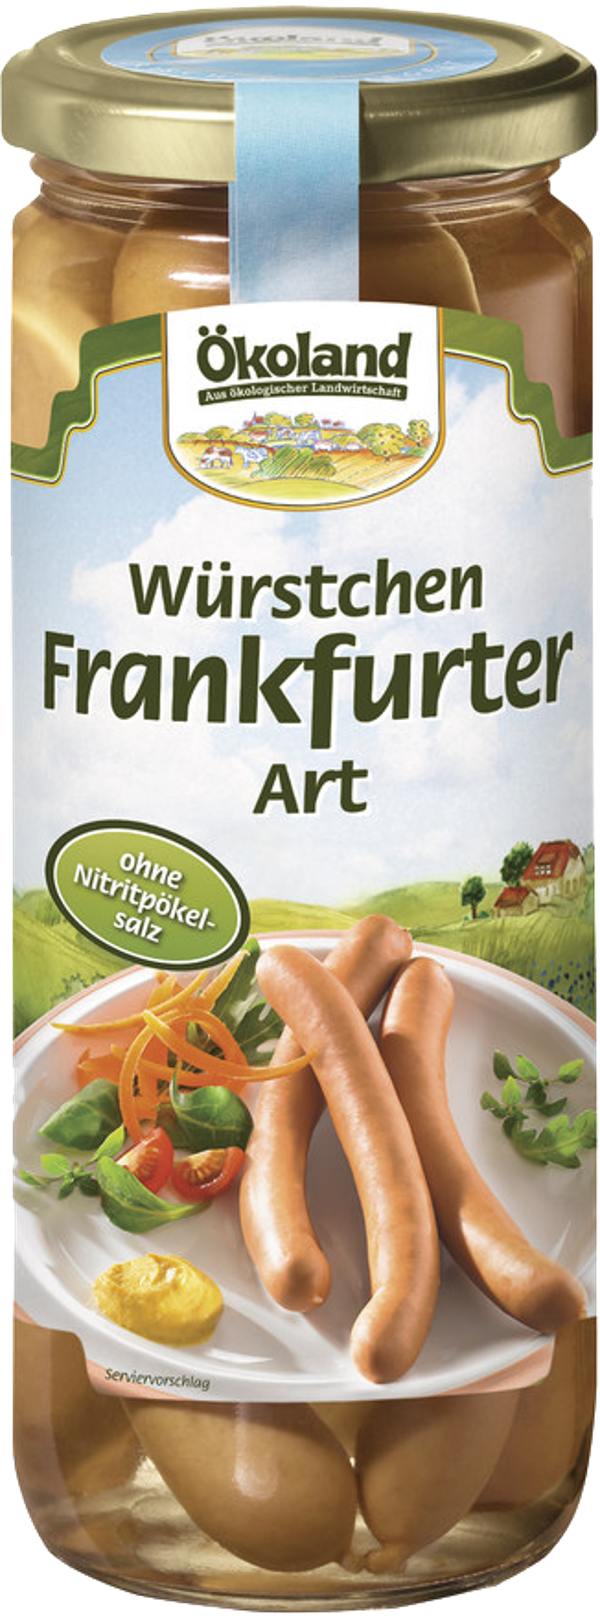 Produktfoto zu Frankfurter Würstchen im Glas